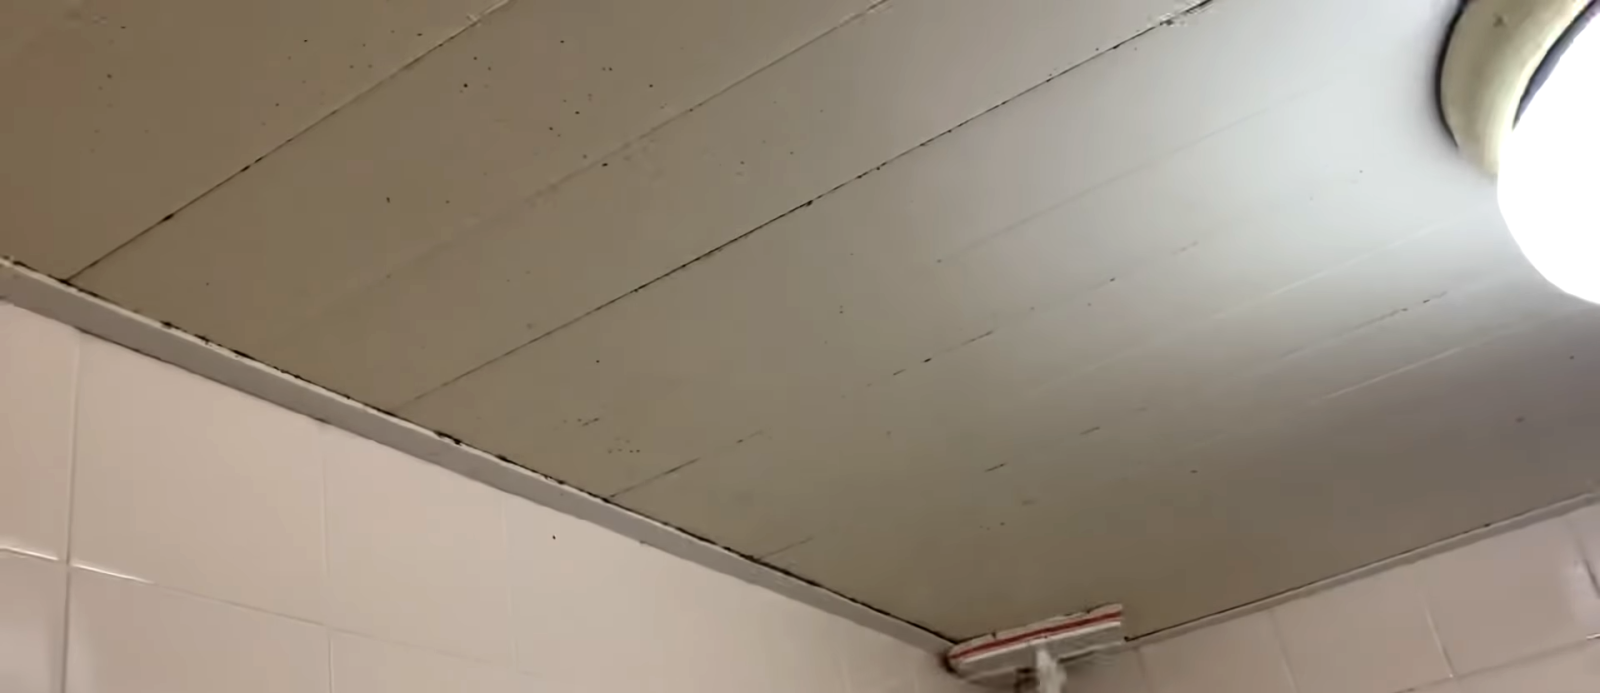 天井にモップを使って塩素系洗剤を塗り込む男性